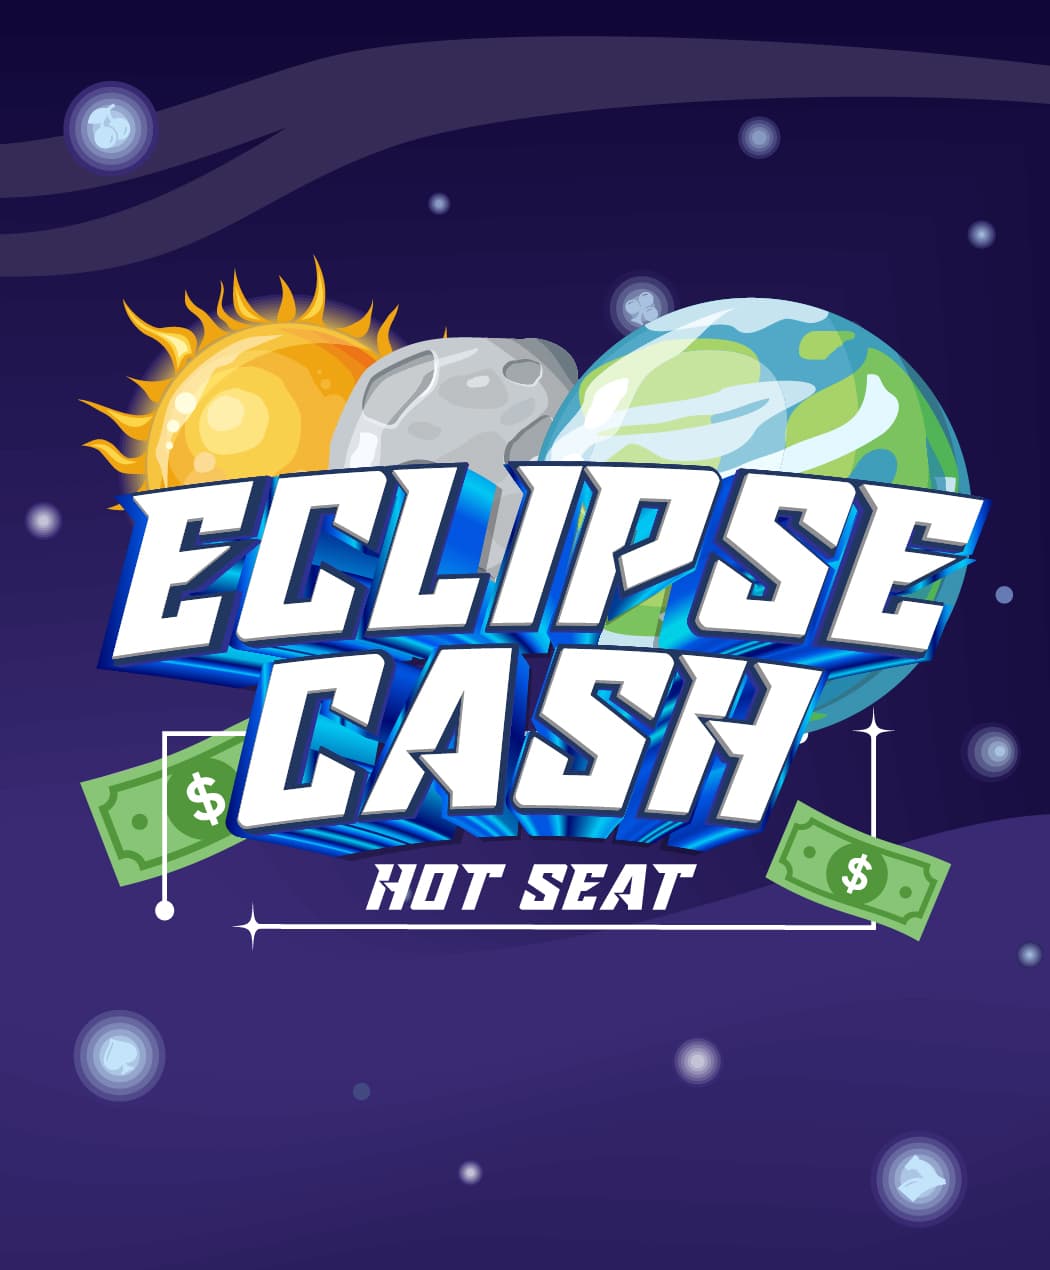 Eclipse Cash Hot Seat